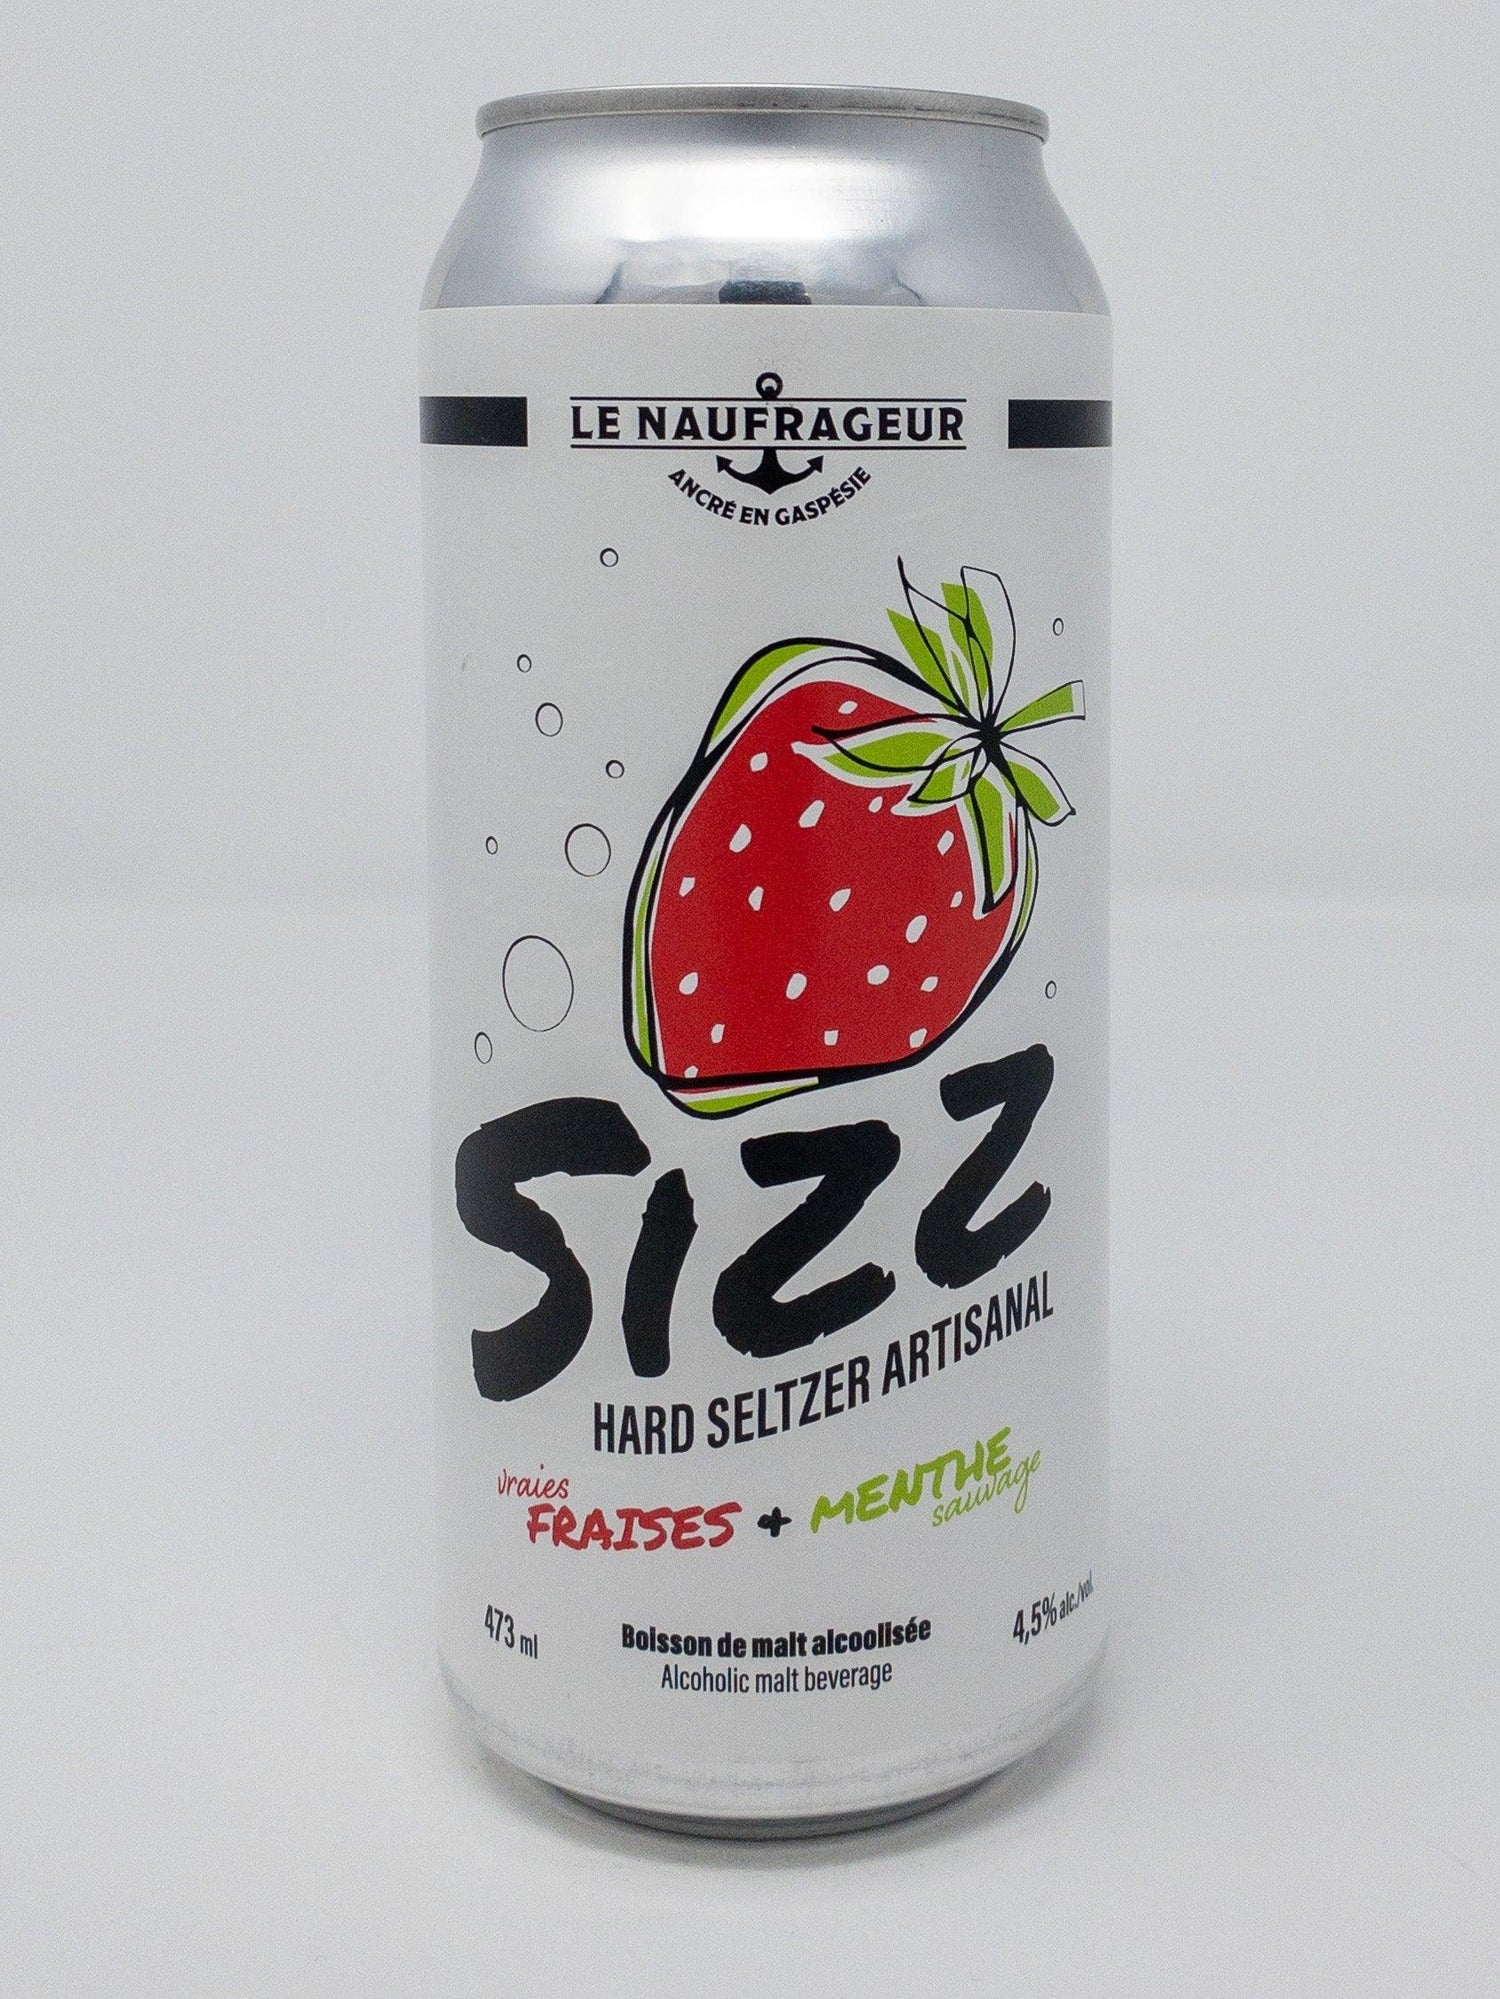 Sizz Hard Seltzer Artisanal - Seltzer - Le Naufrageur - Beau Dégât Bièrerie de Quartier